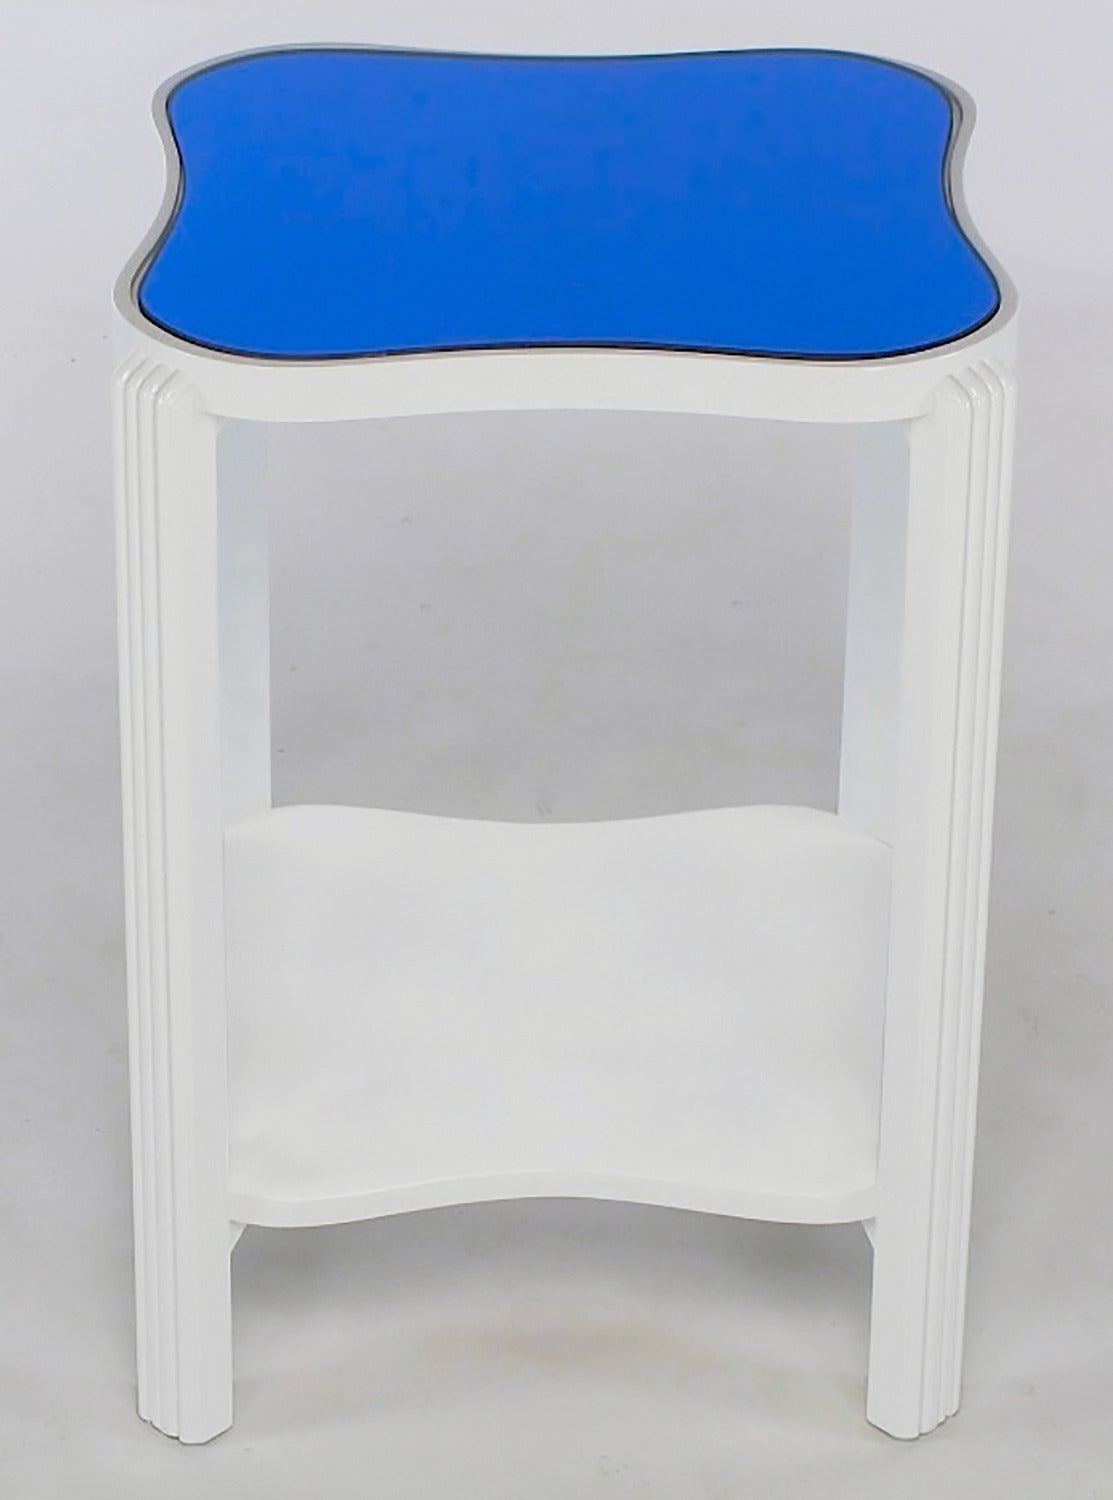 Restaurierter glänzender weißer Lack über Ahorn Art Deco Beistelltisch mit originaler blauer Spiegelplatte. Quadratische, fesselförmige, zweistufige Oberfläche; obere Stufe mit blauem Spiegel und zweite Stufe wahlweise mit blauem Spiegel oder weißem